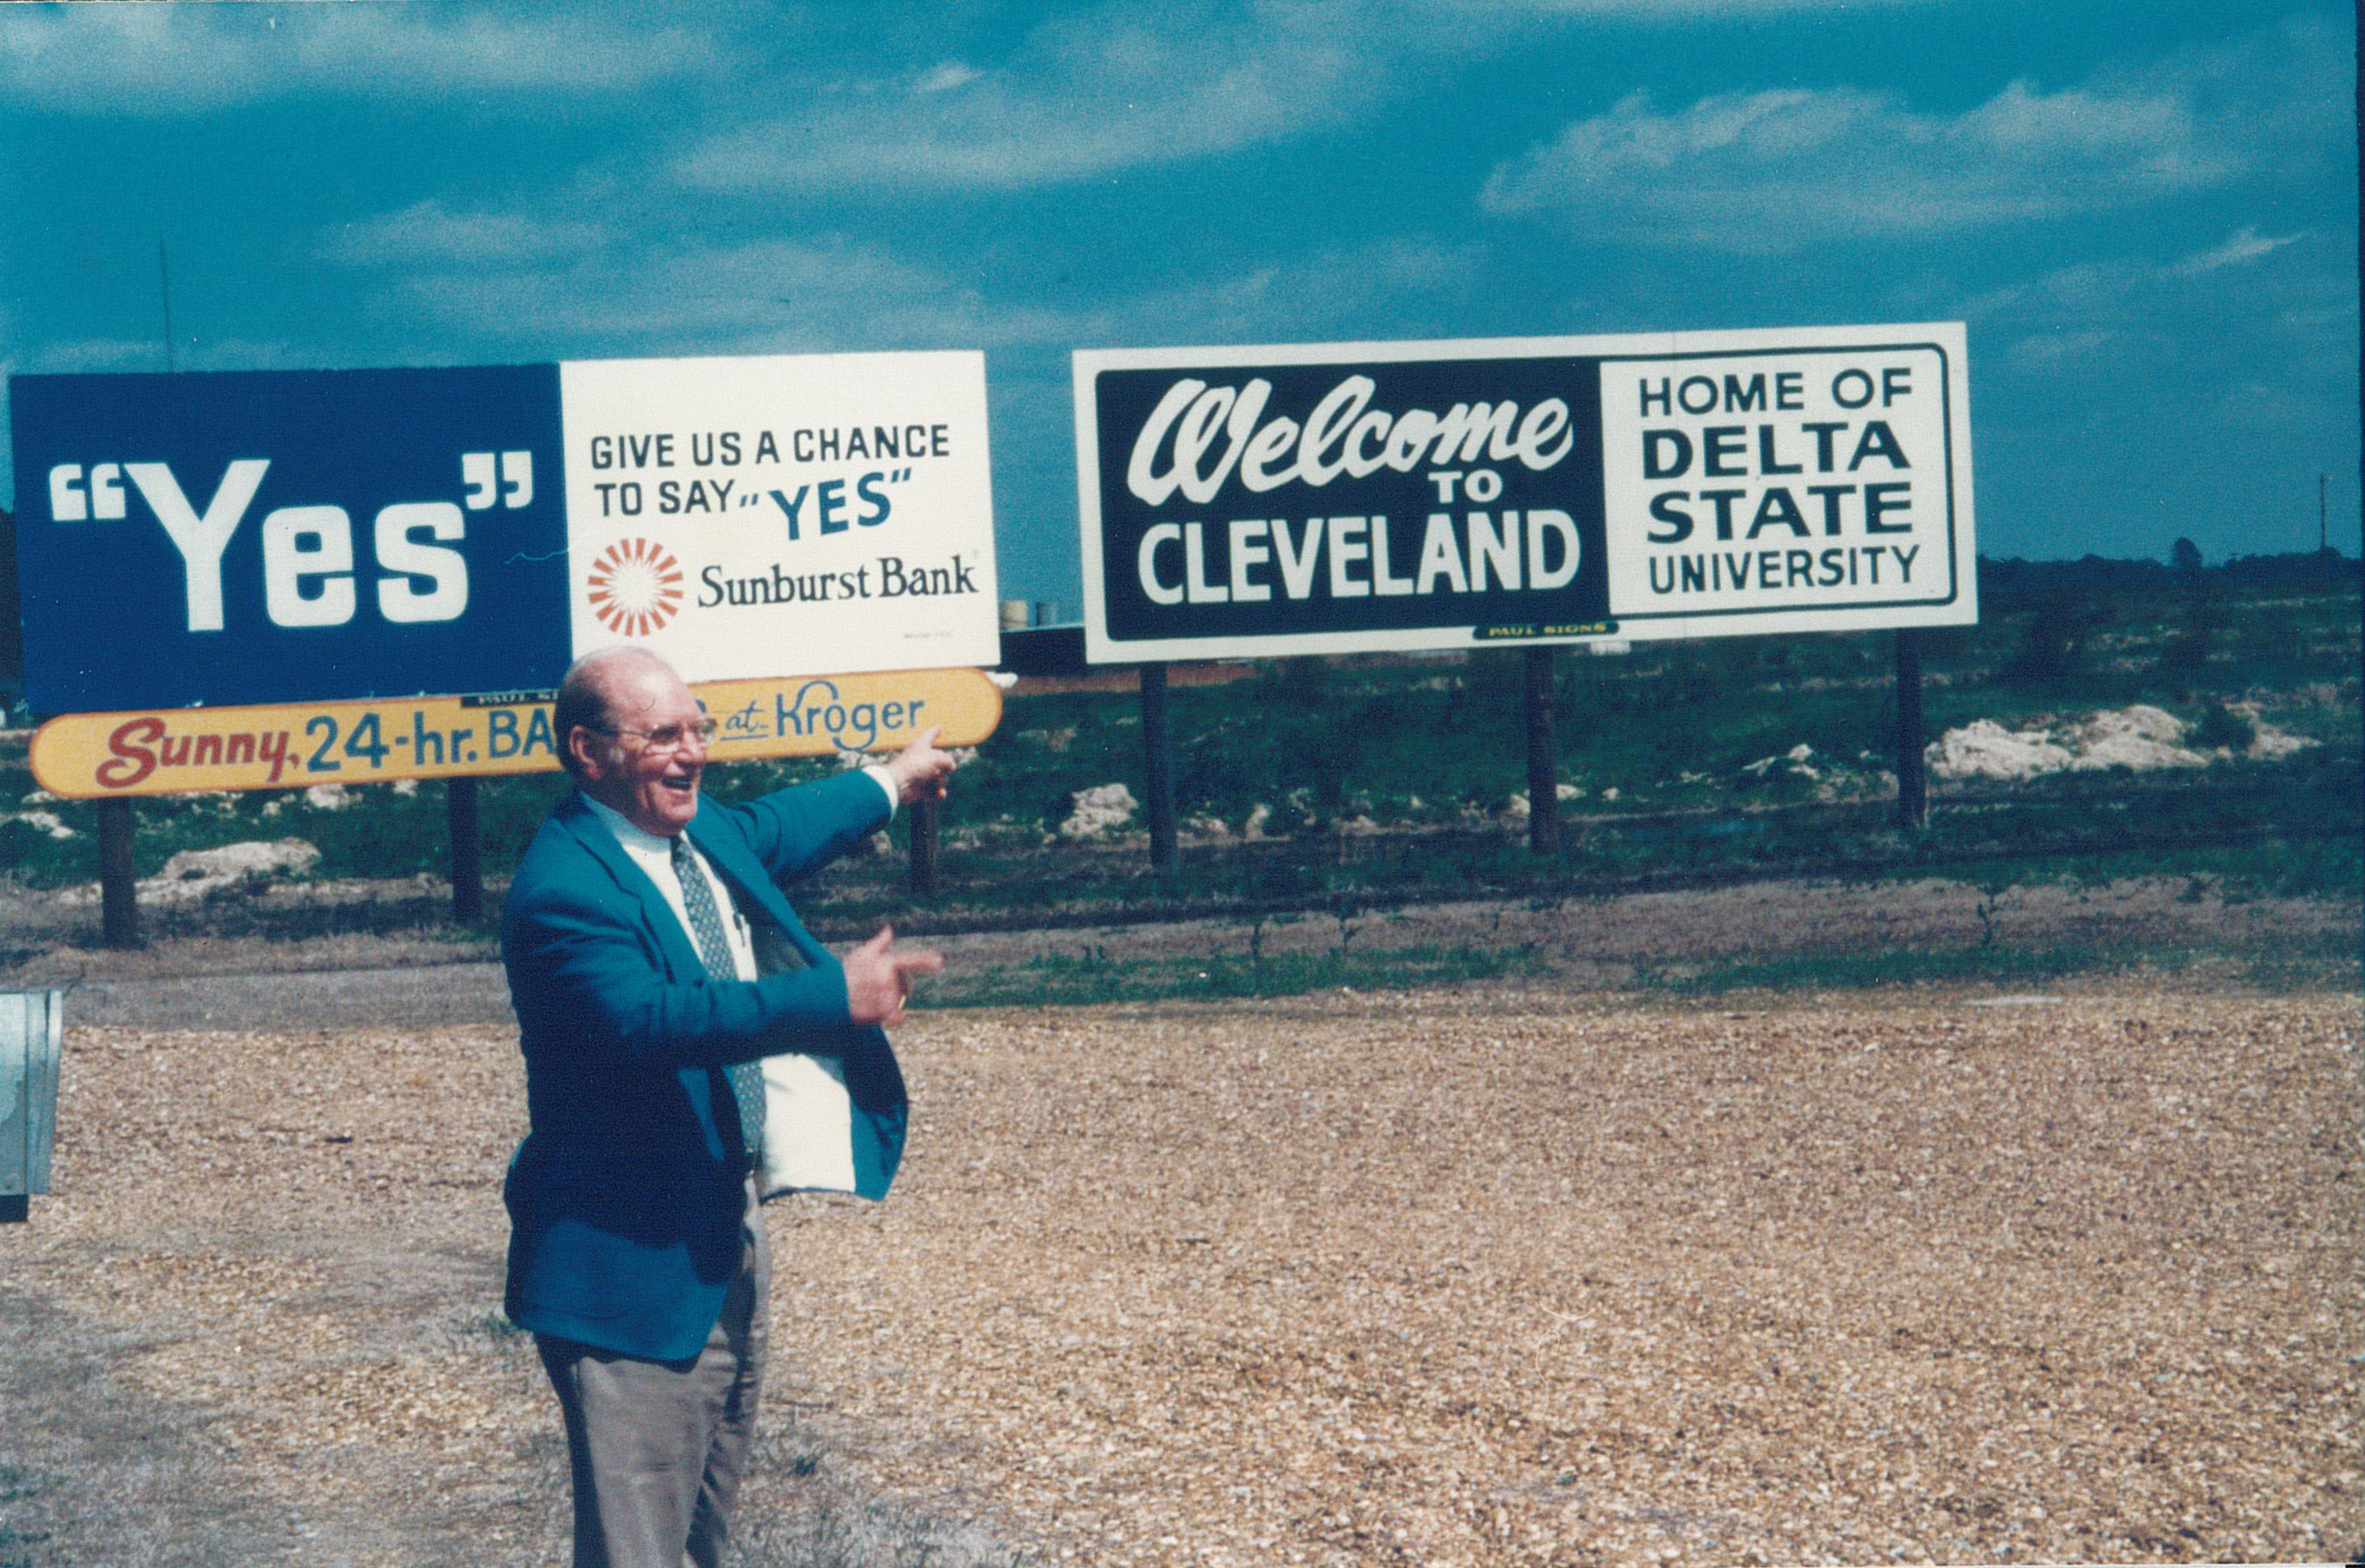 Welcome to Delta State bilboard circa 1980s